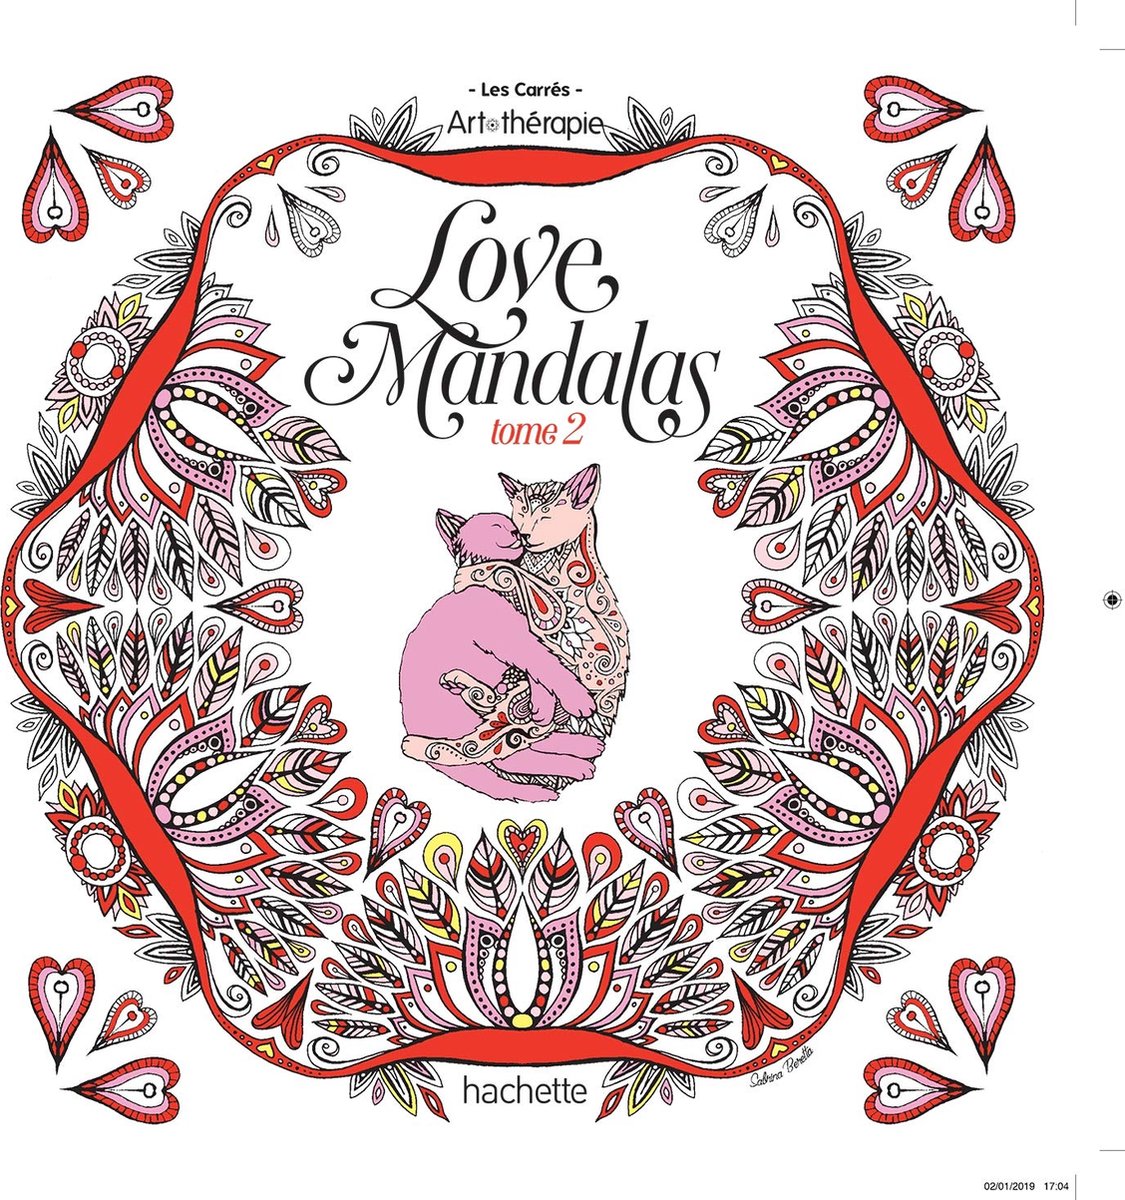 GRAND CARRE ART-THERAPIE LOVE Mandalas 2 - Kleurboek voor volwassenen